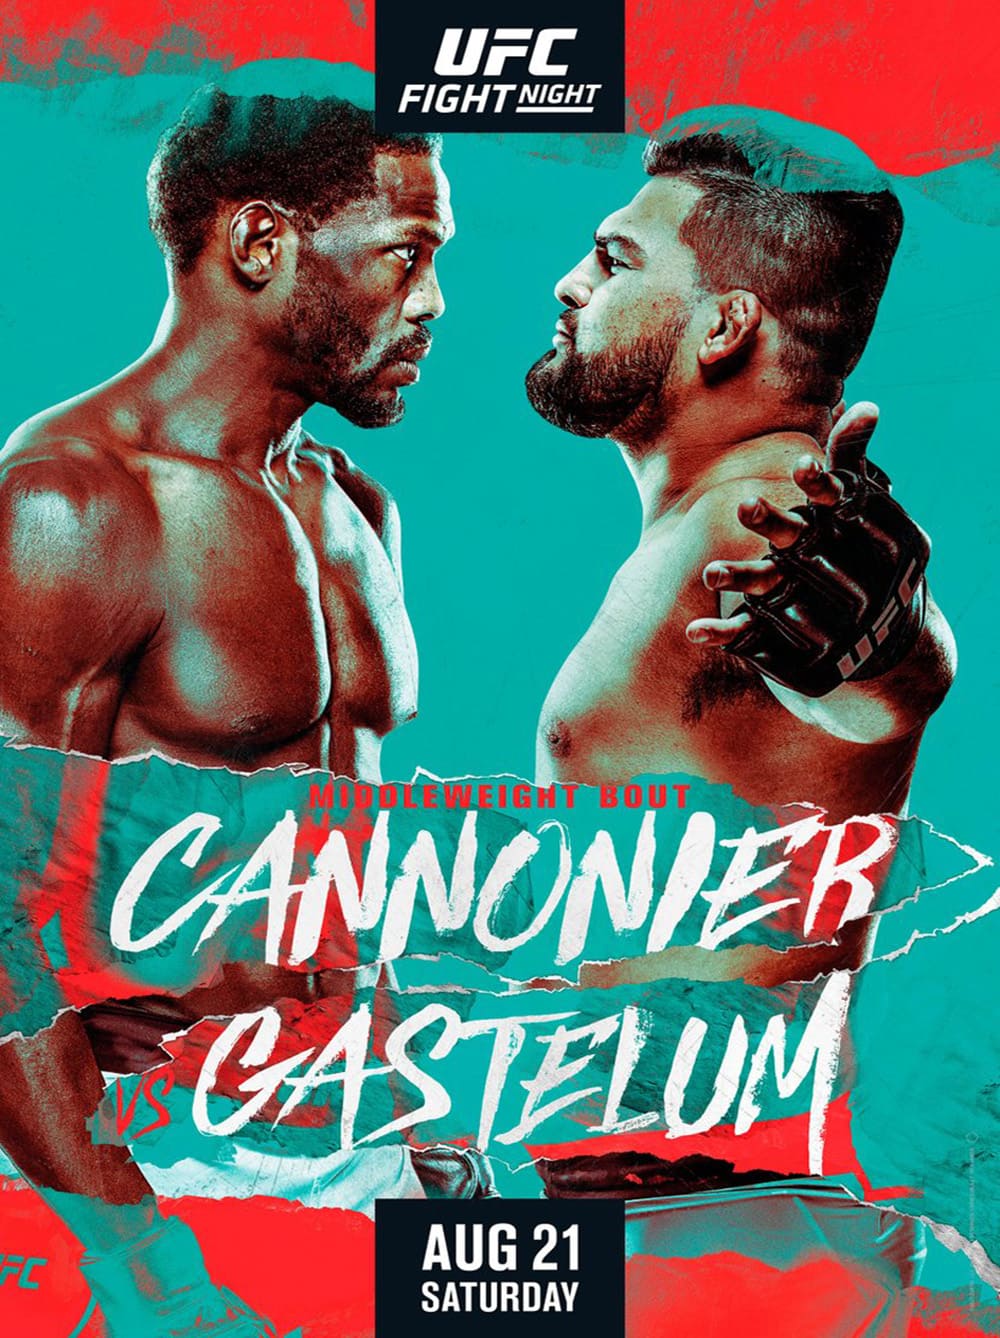 UFC on ESPN 29: Каннонье - Гастелум дата проведения, кард, участники и результаты